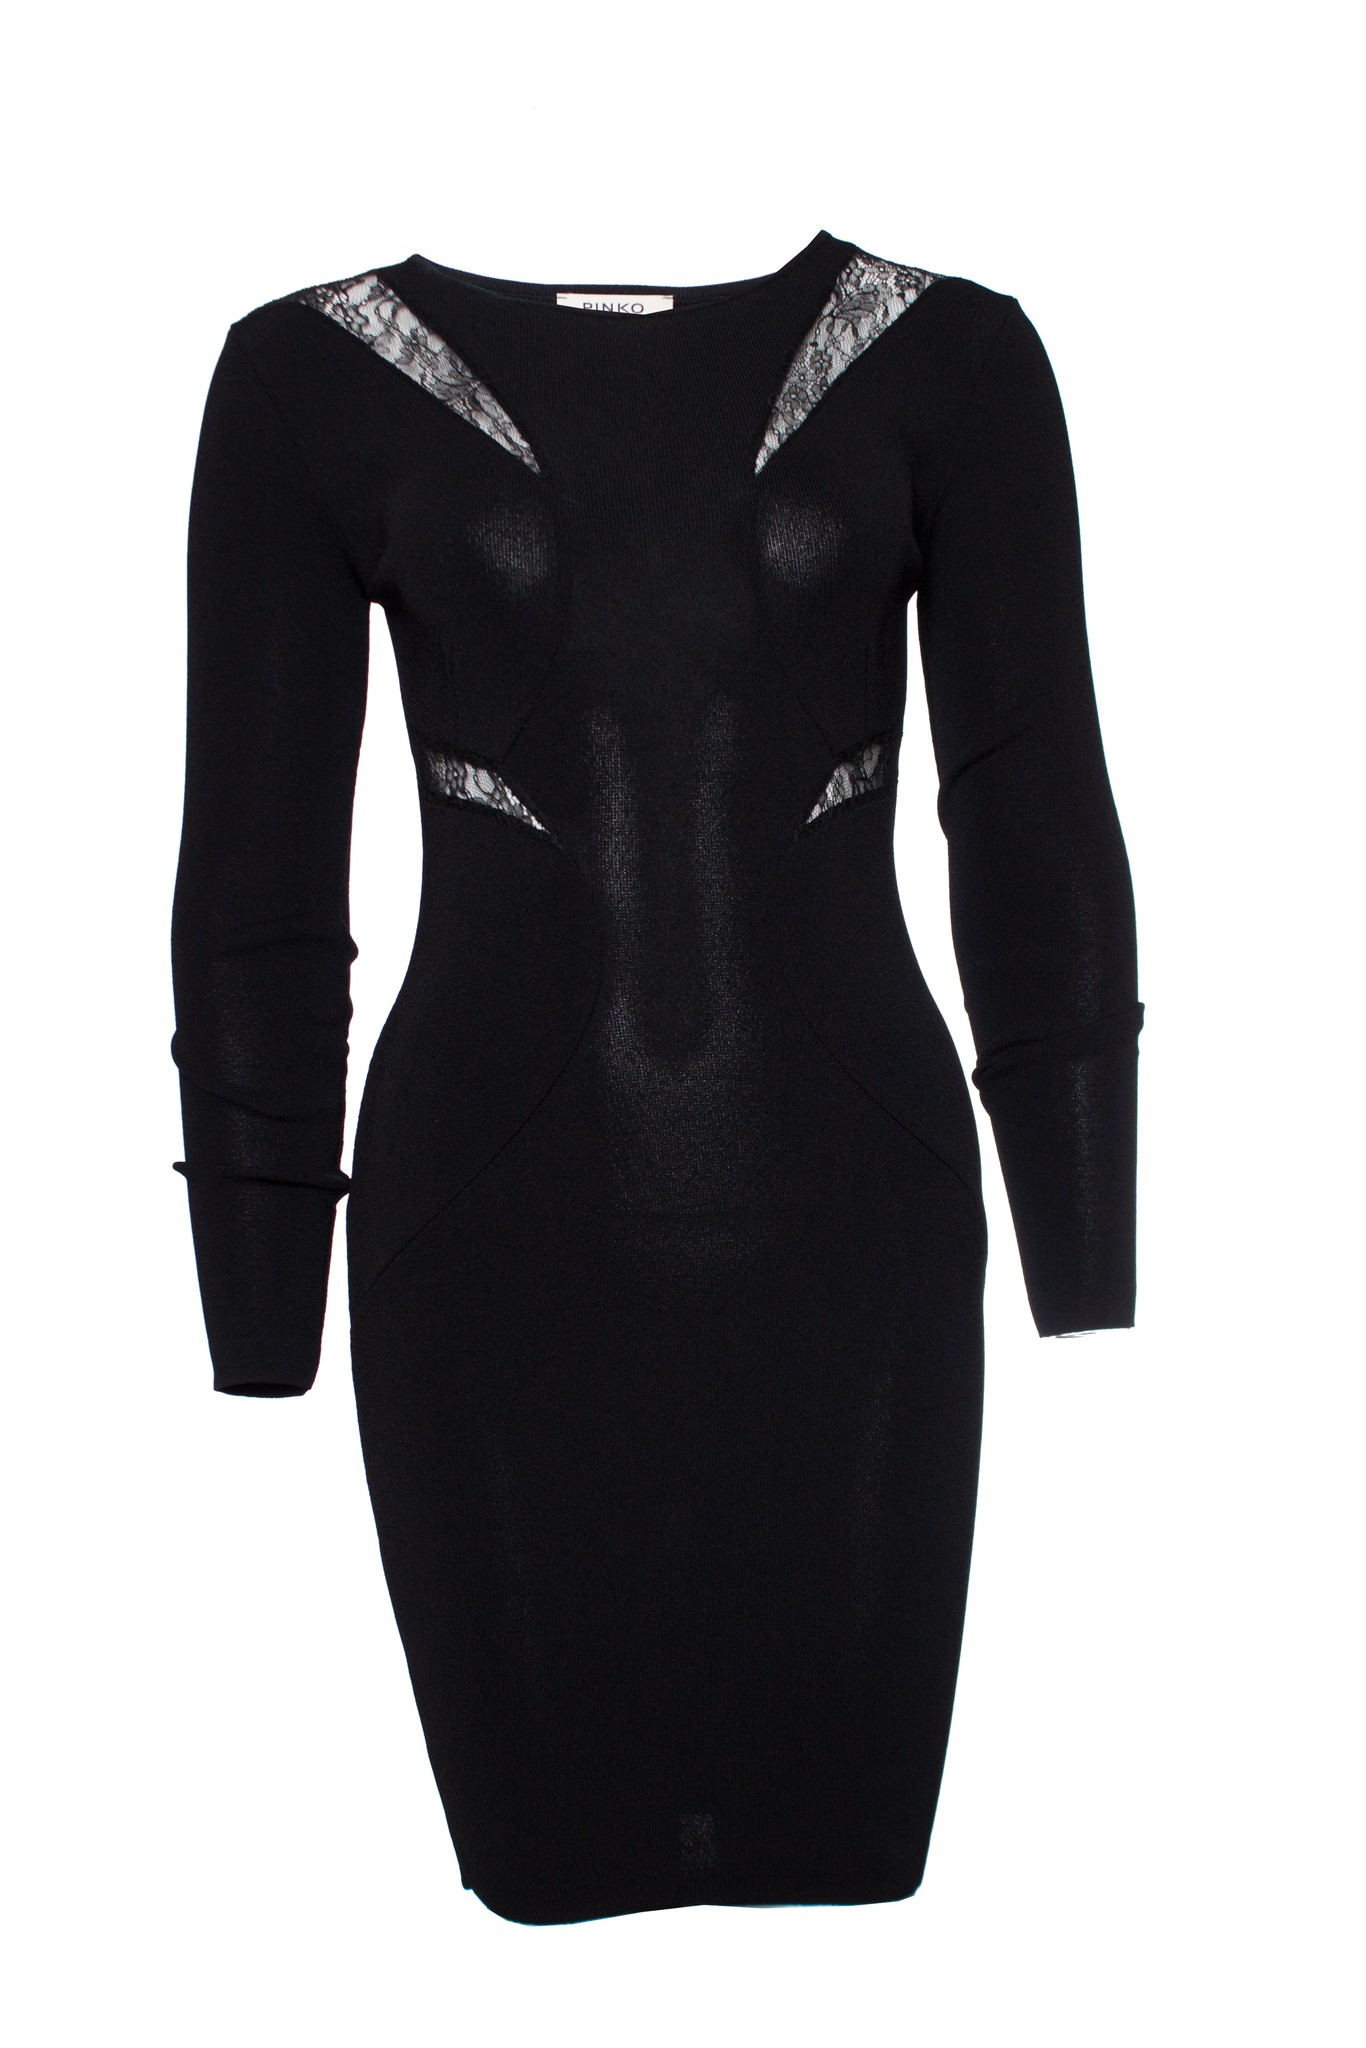 Pinko, black stretch dress with lace details - Unique Designer Pieces